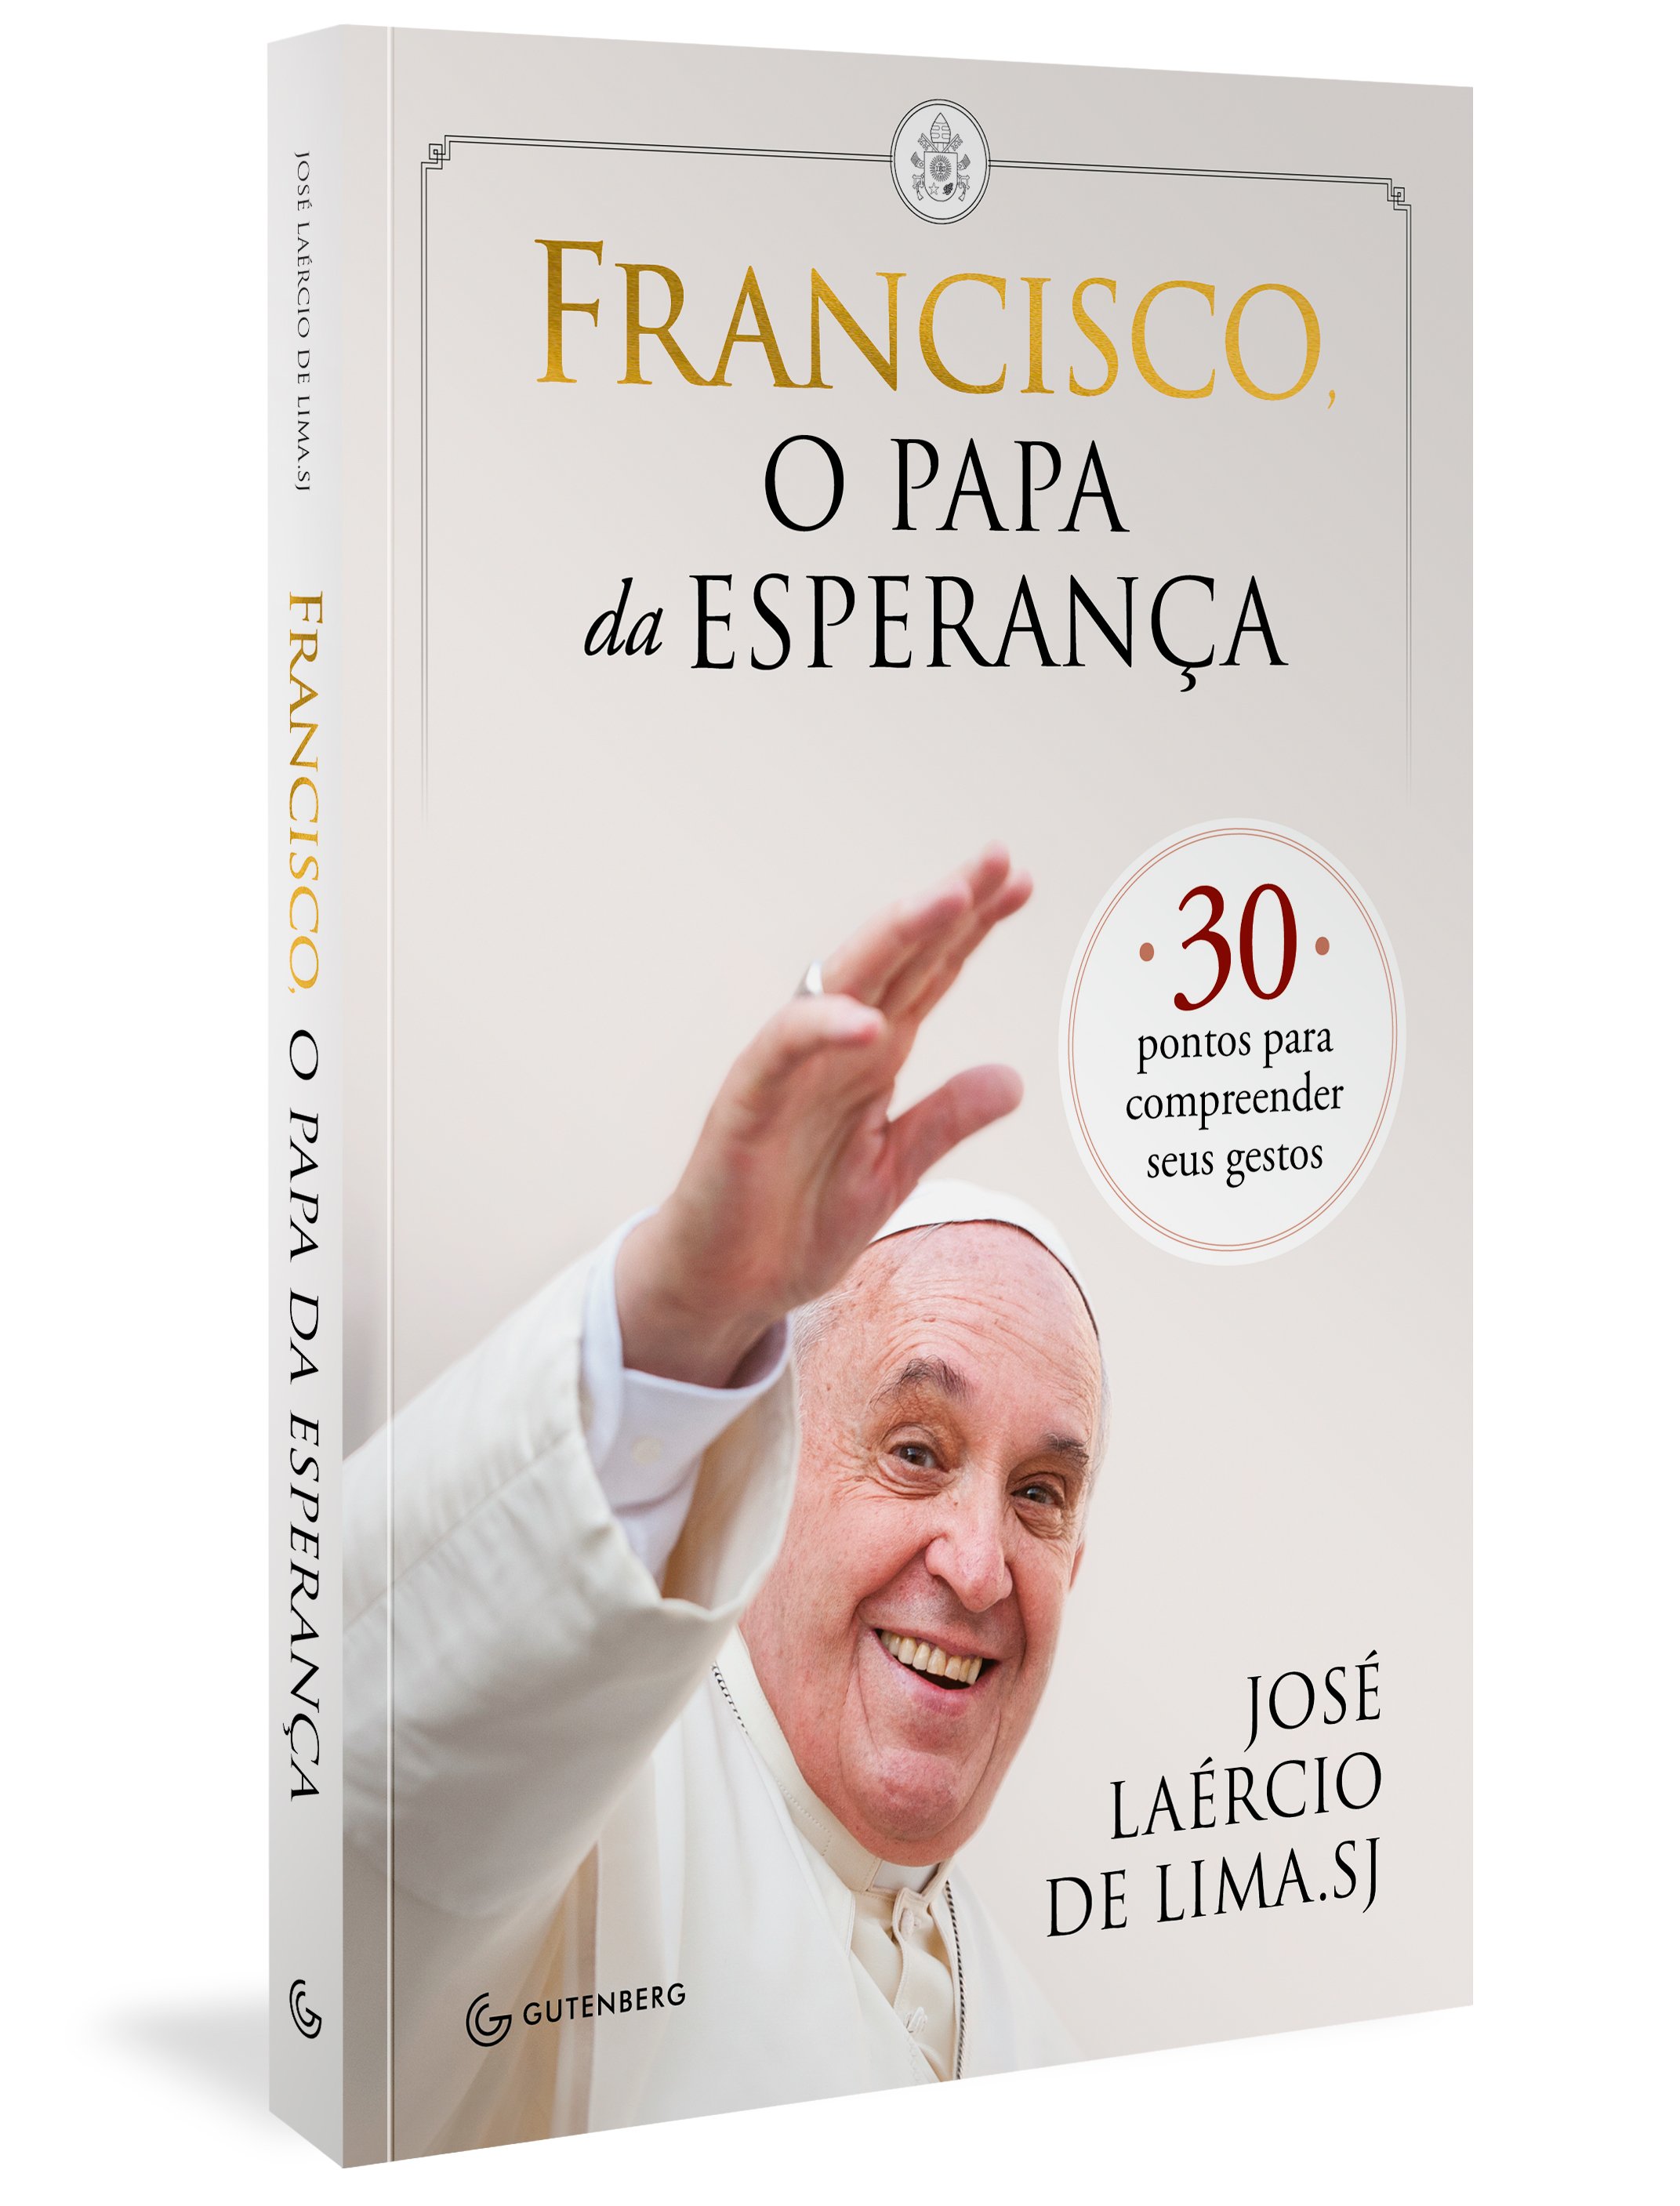 Francisco, O Papa da Esperança